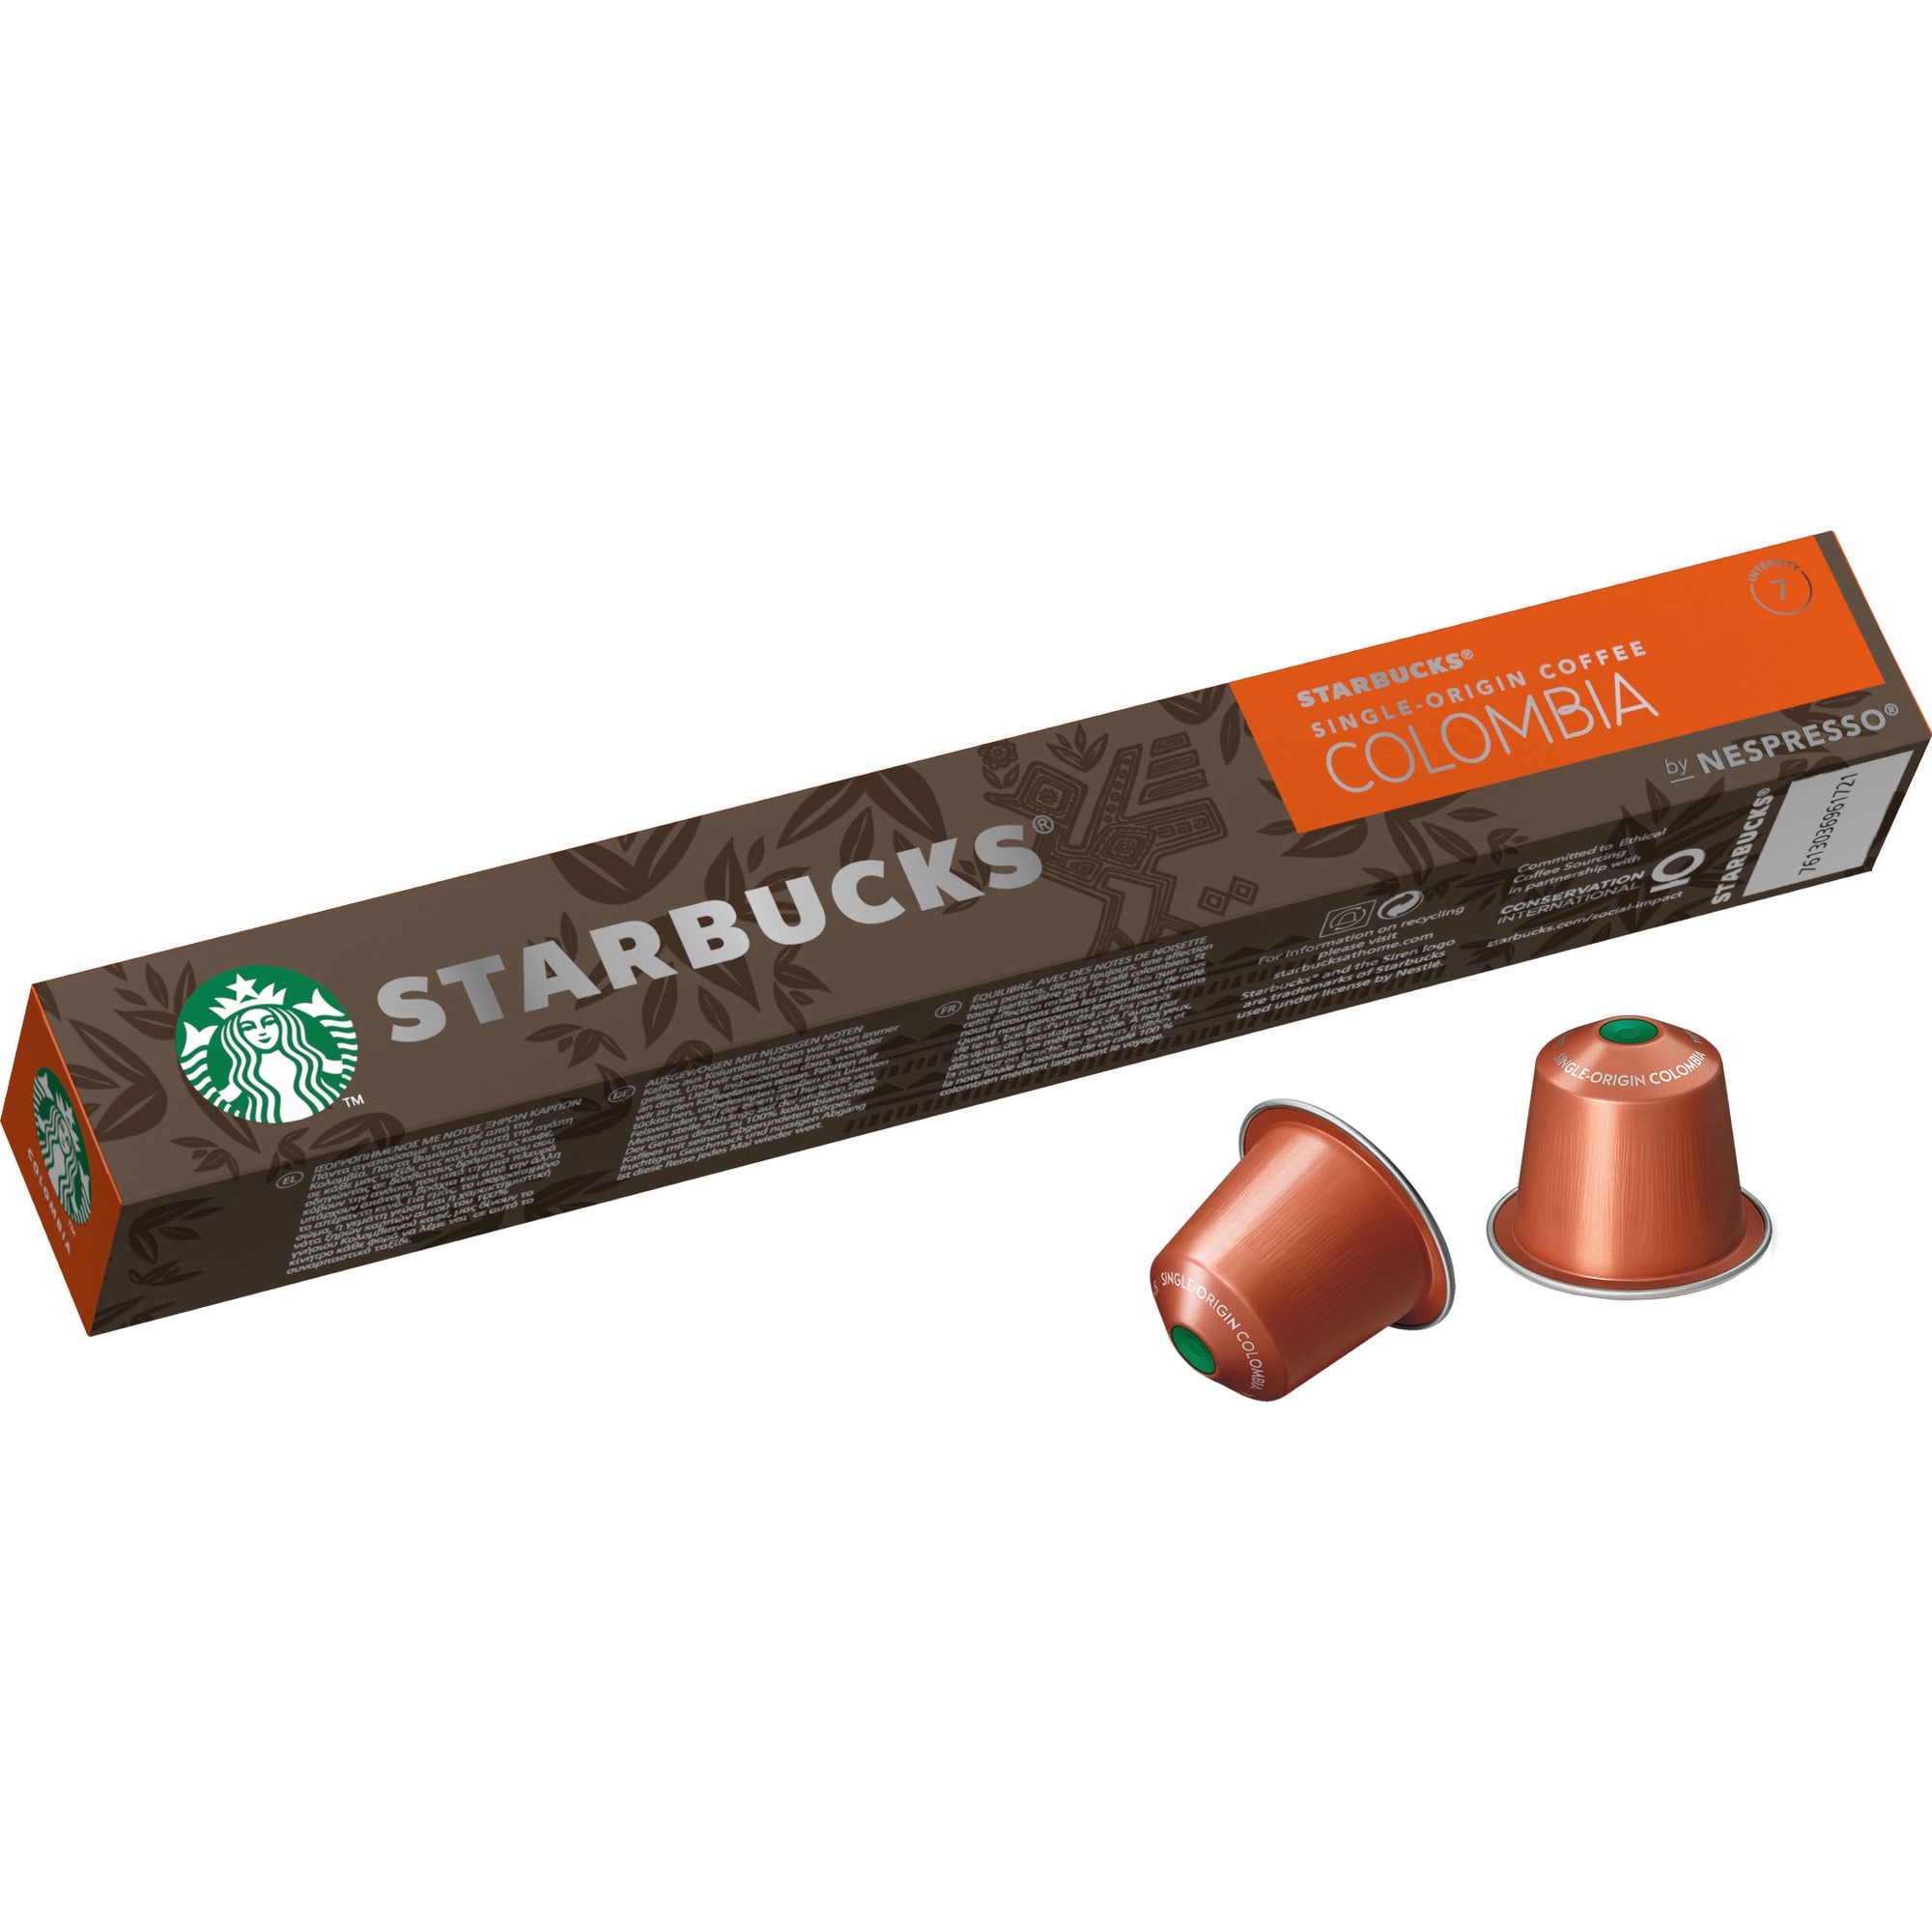 Starbucks by Nespresso Single-Origin Colombia kapsler ST12429169 thumbnail